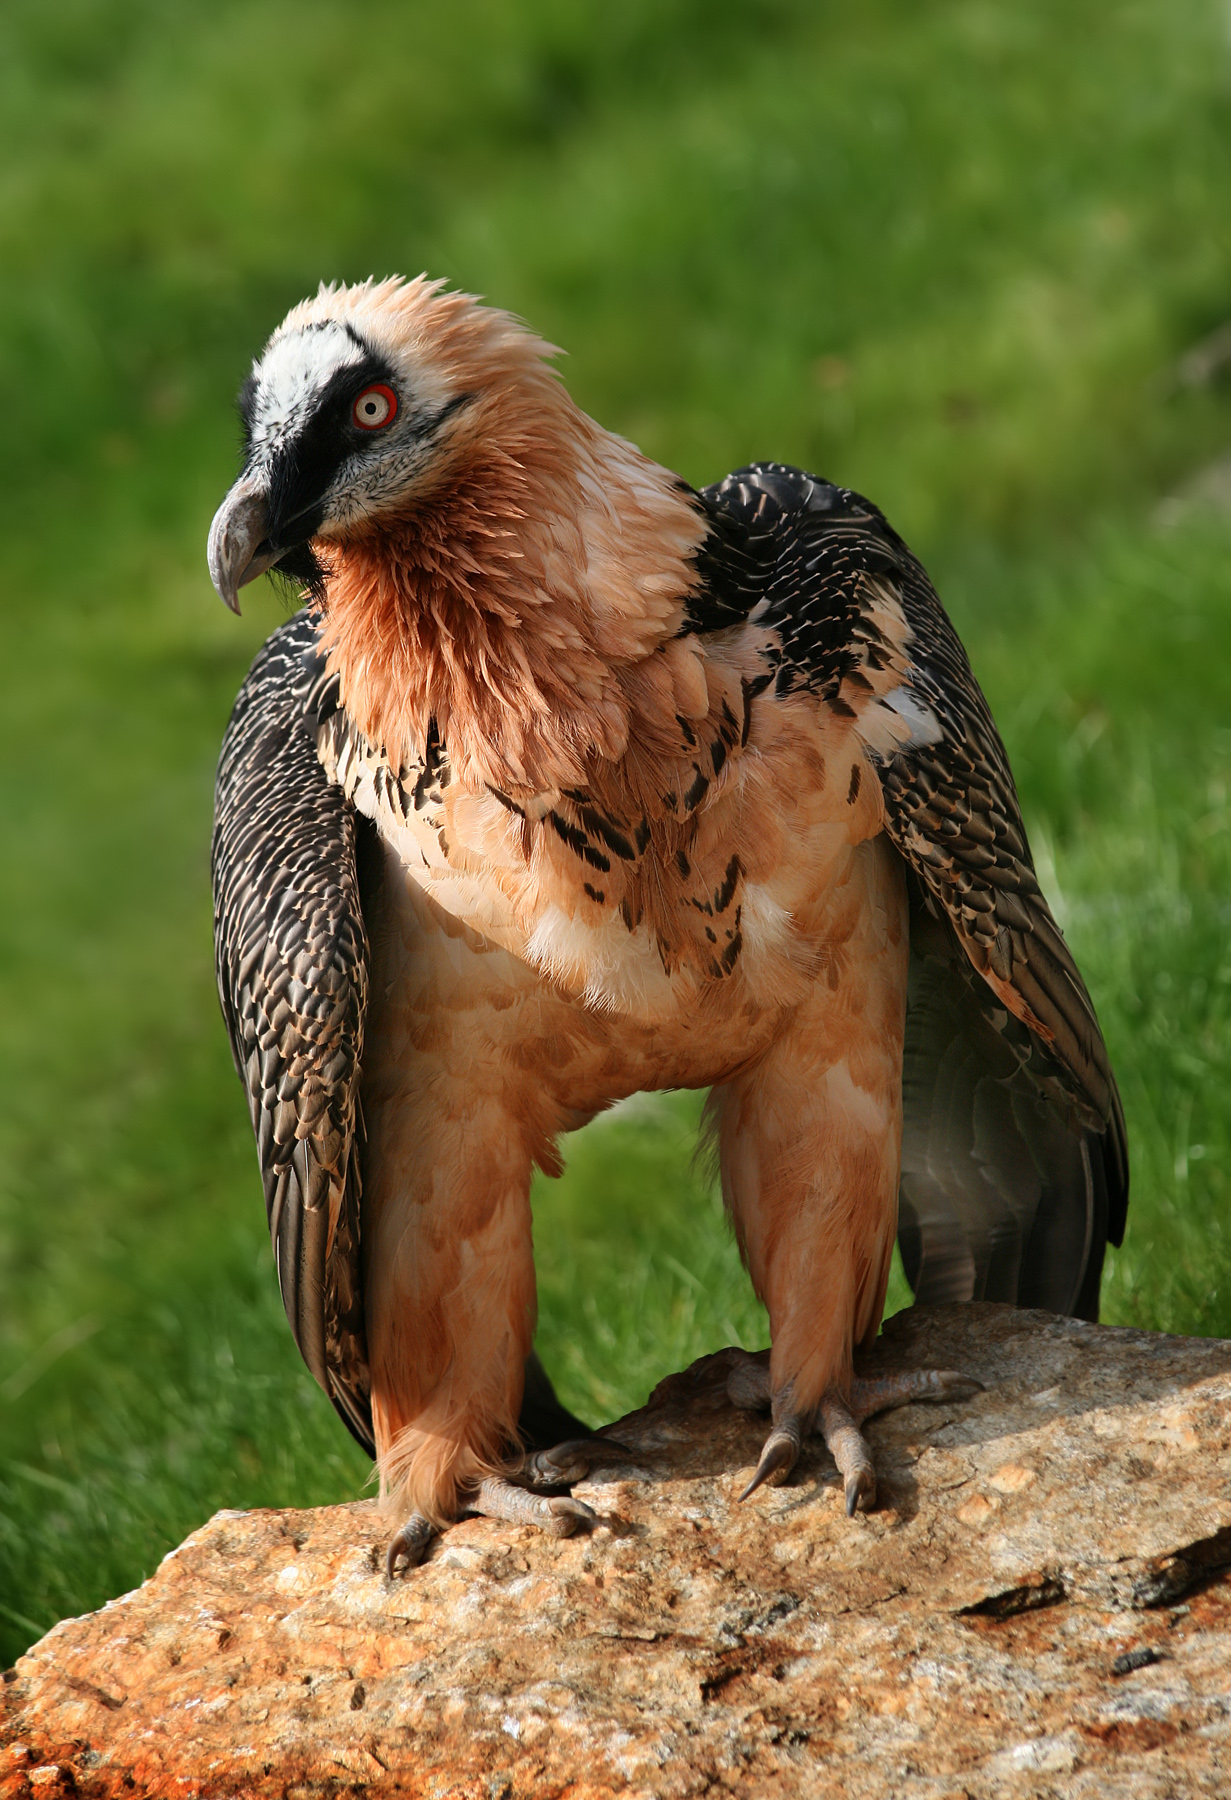 Why do bearded vultures eat bones?